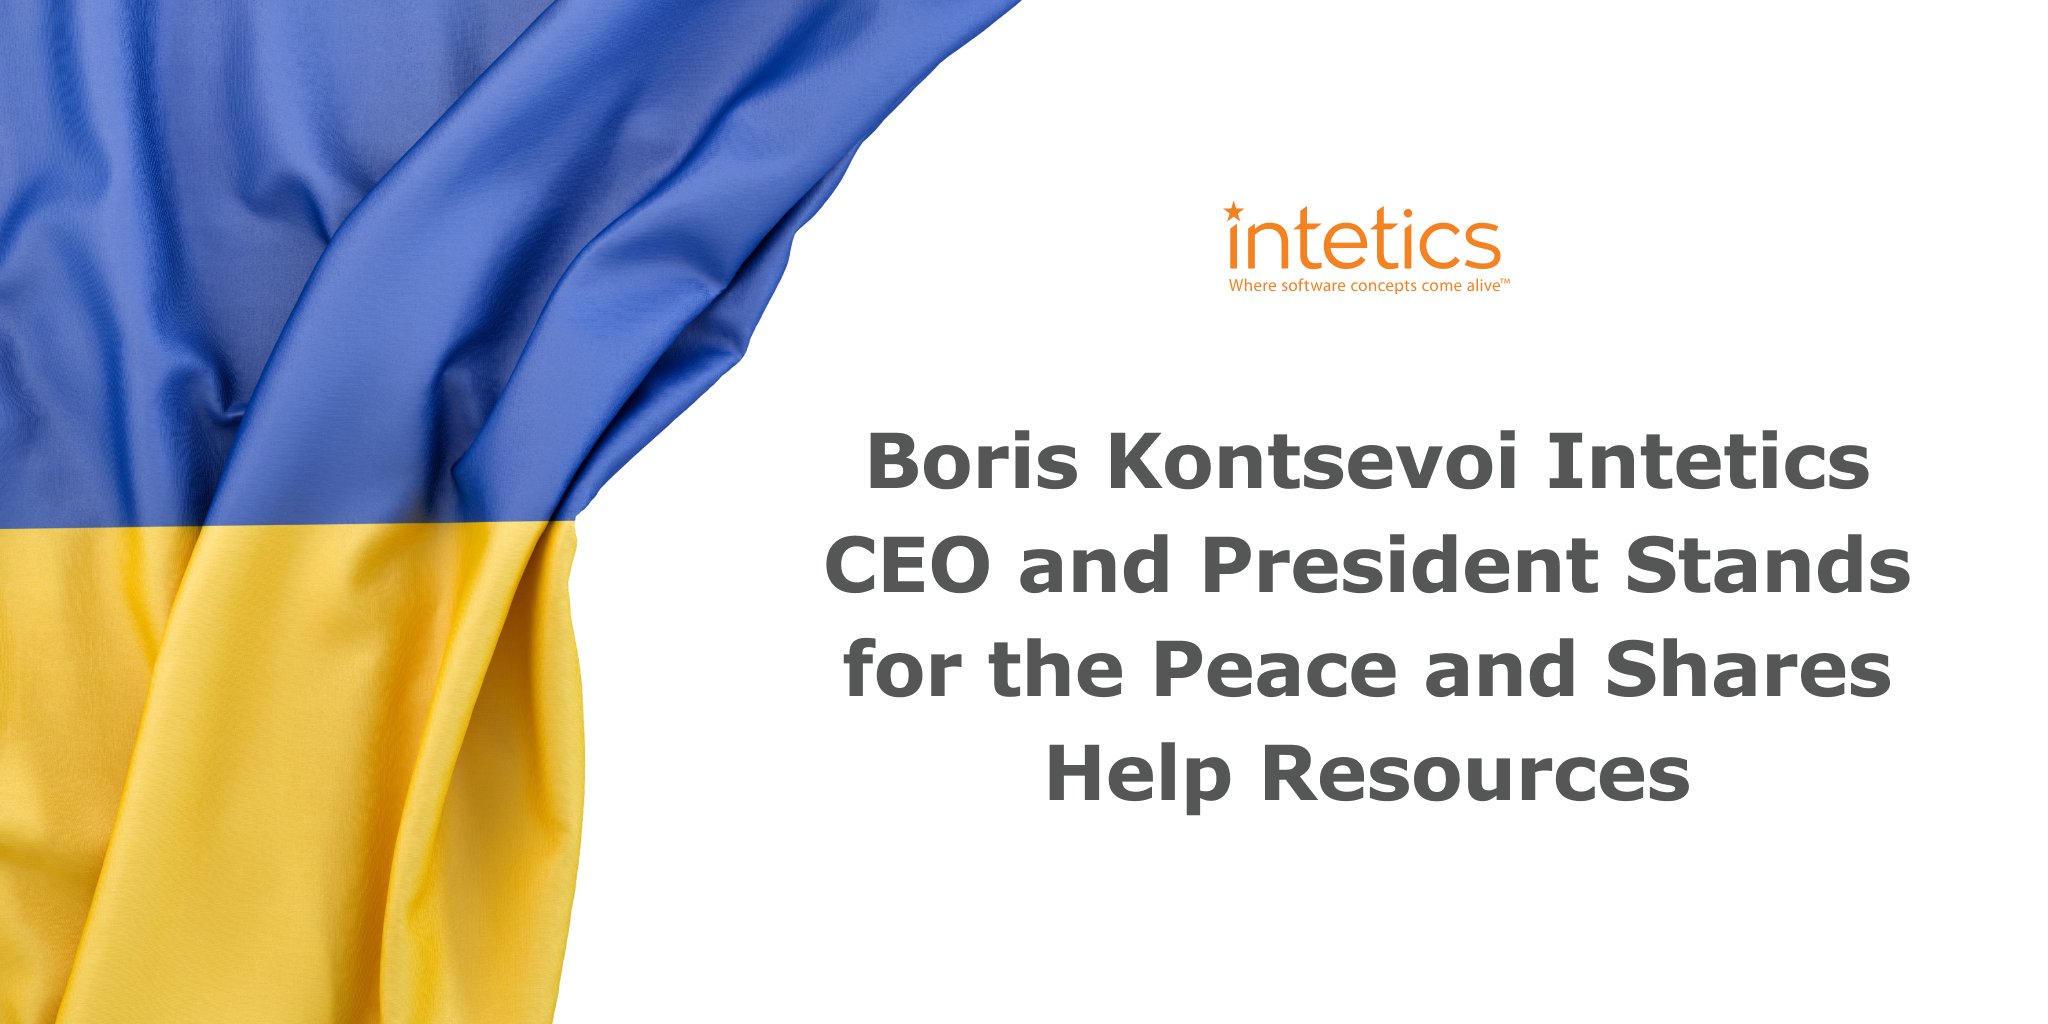 Intetics Ukraine là công ty nổi tiếng với chất lượng và sự chuyên nghiệp trong các giải pháp công nghệ cao. Chia sẻ từ Boris Kontsevoi, Giám đốc điều hành và Tổng giám đốc trên trang Twitter, thông tin về công ty này sẽ đem lại cho bạn sự đáng tin cậy và chất lượng đảm bảo cho các sản phẩm của mình.